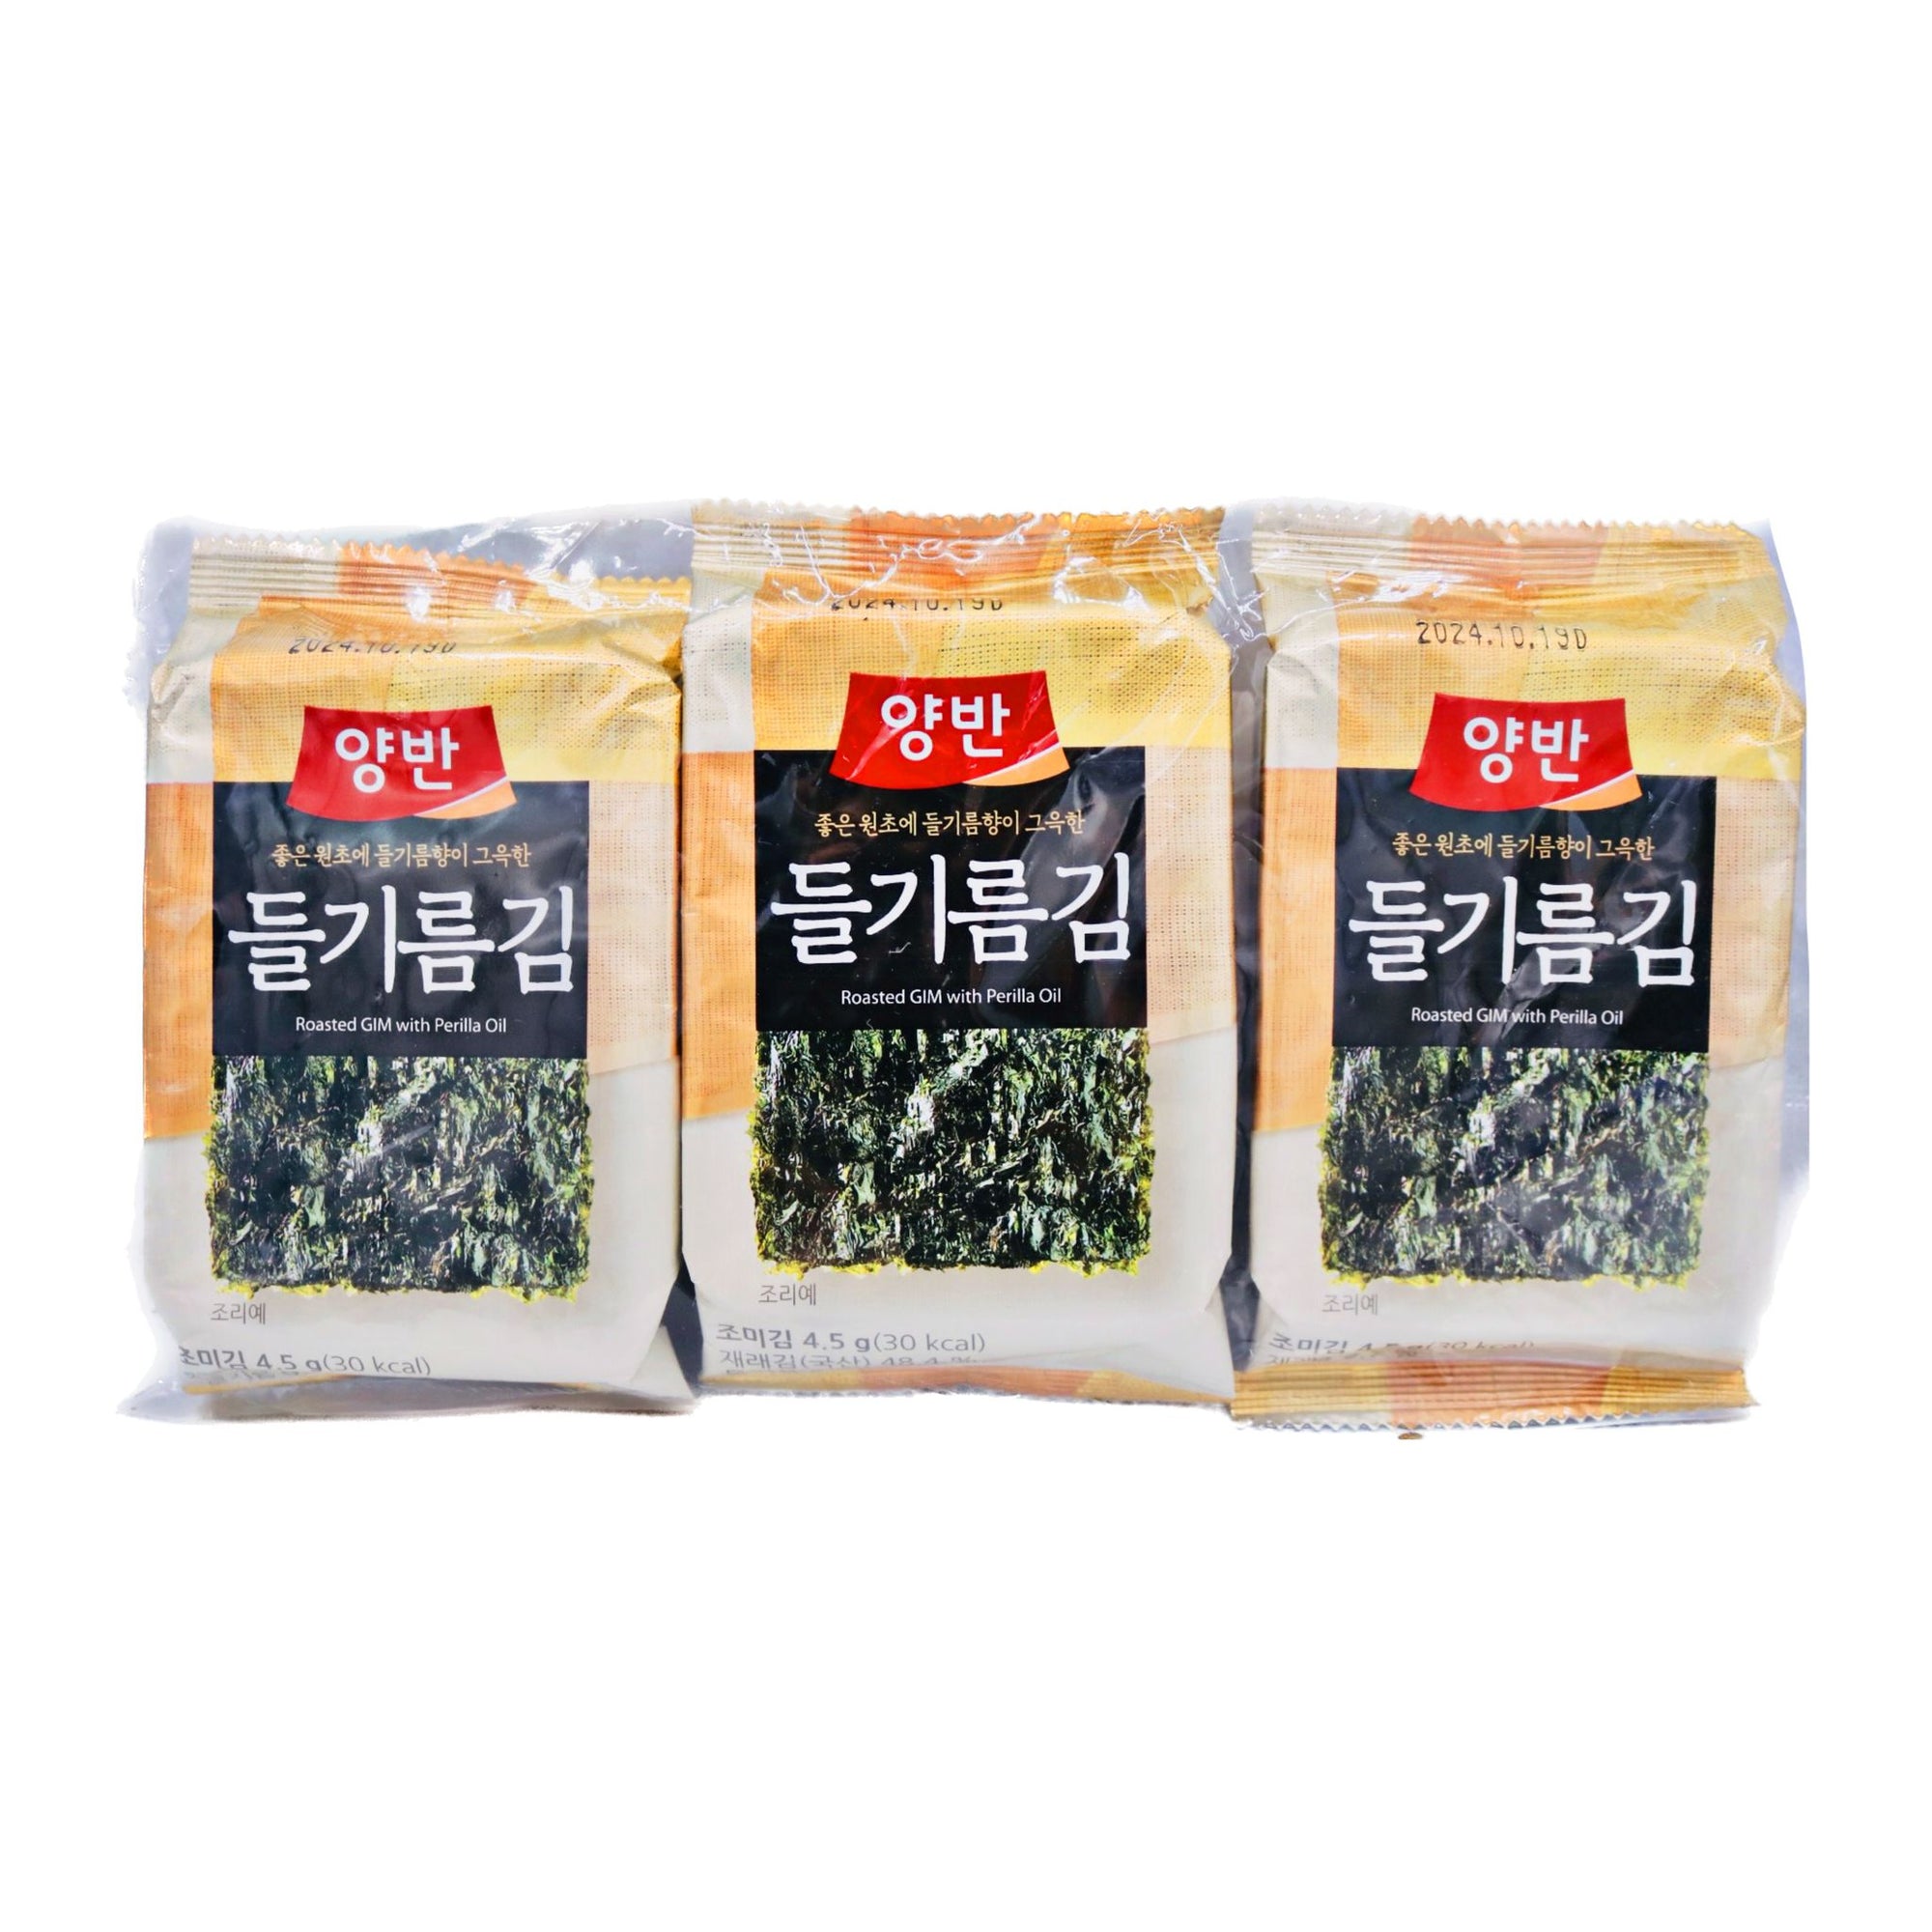 Dongwon Roasted Laver - Perilla Oil (4.5g*3pkgs) 13.5g - Tuk Tuk Mart